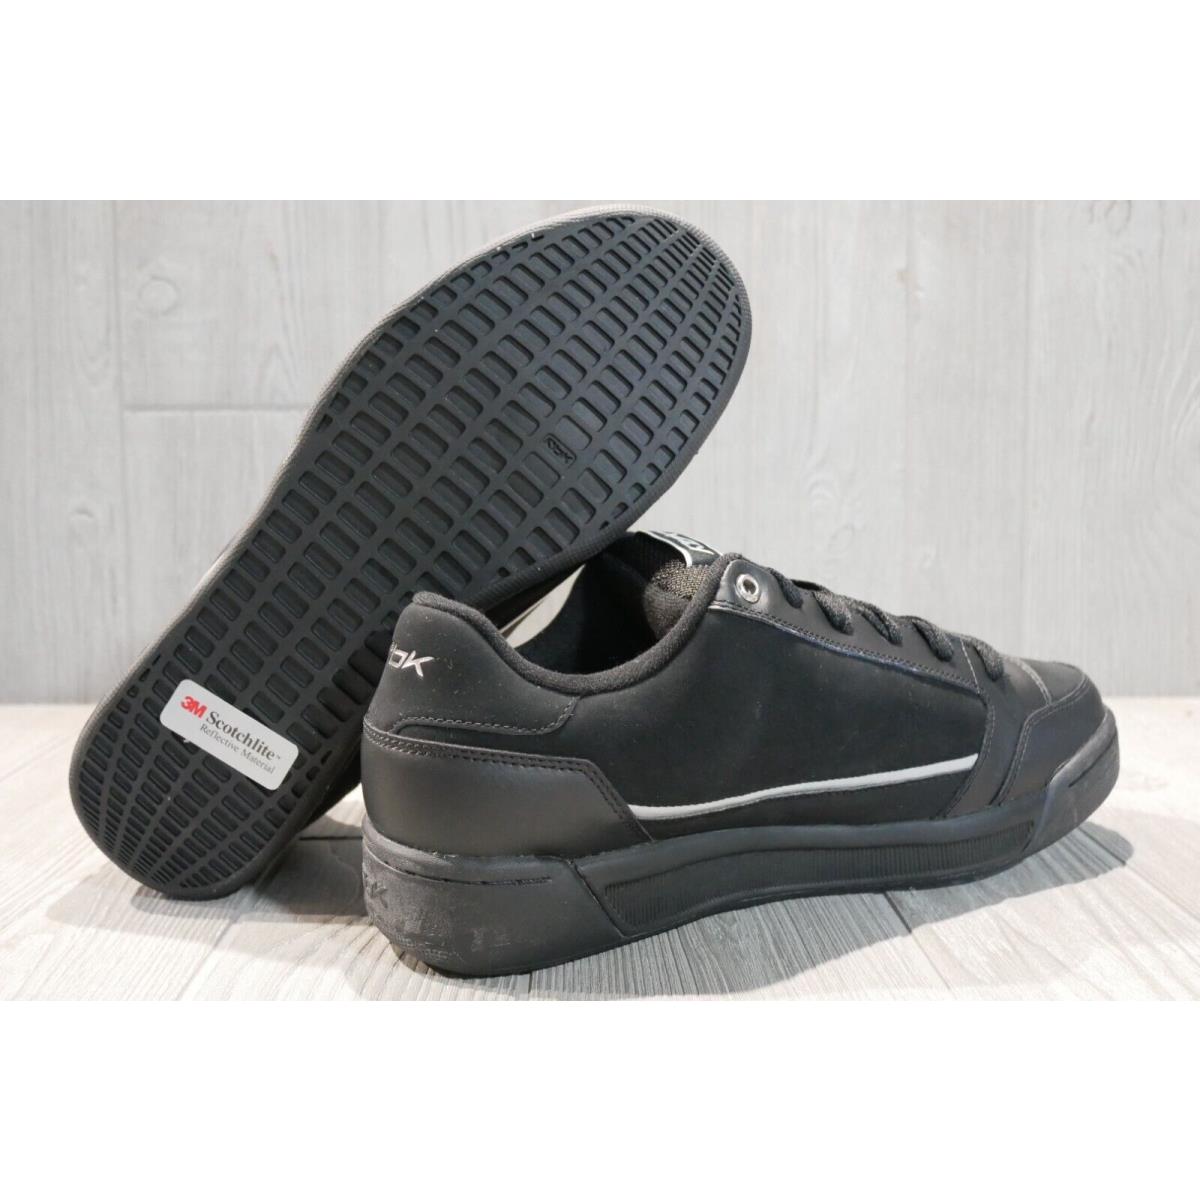 Reebok shoes RBK - Black 4